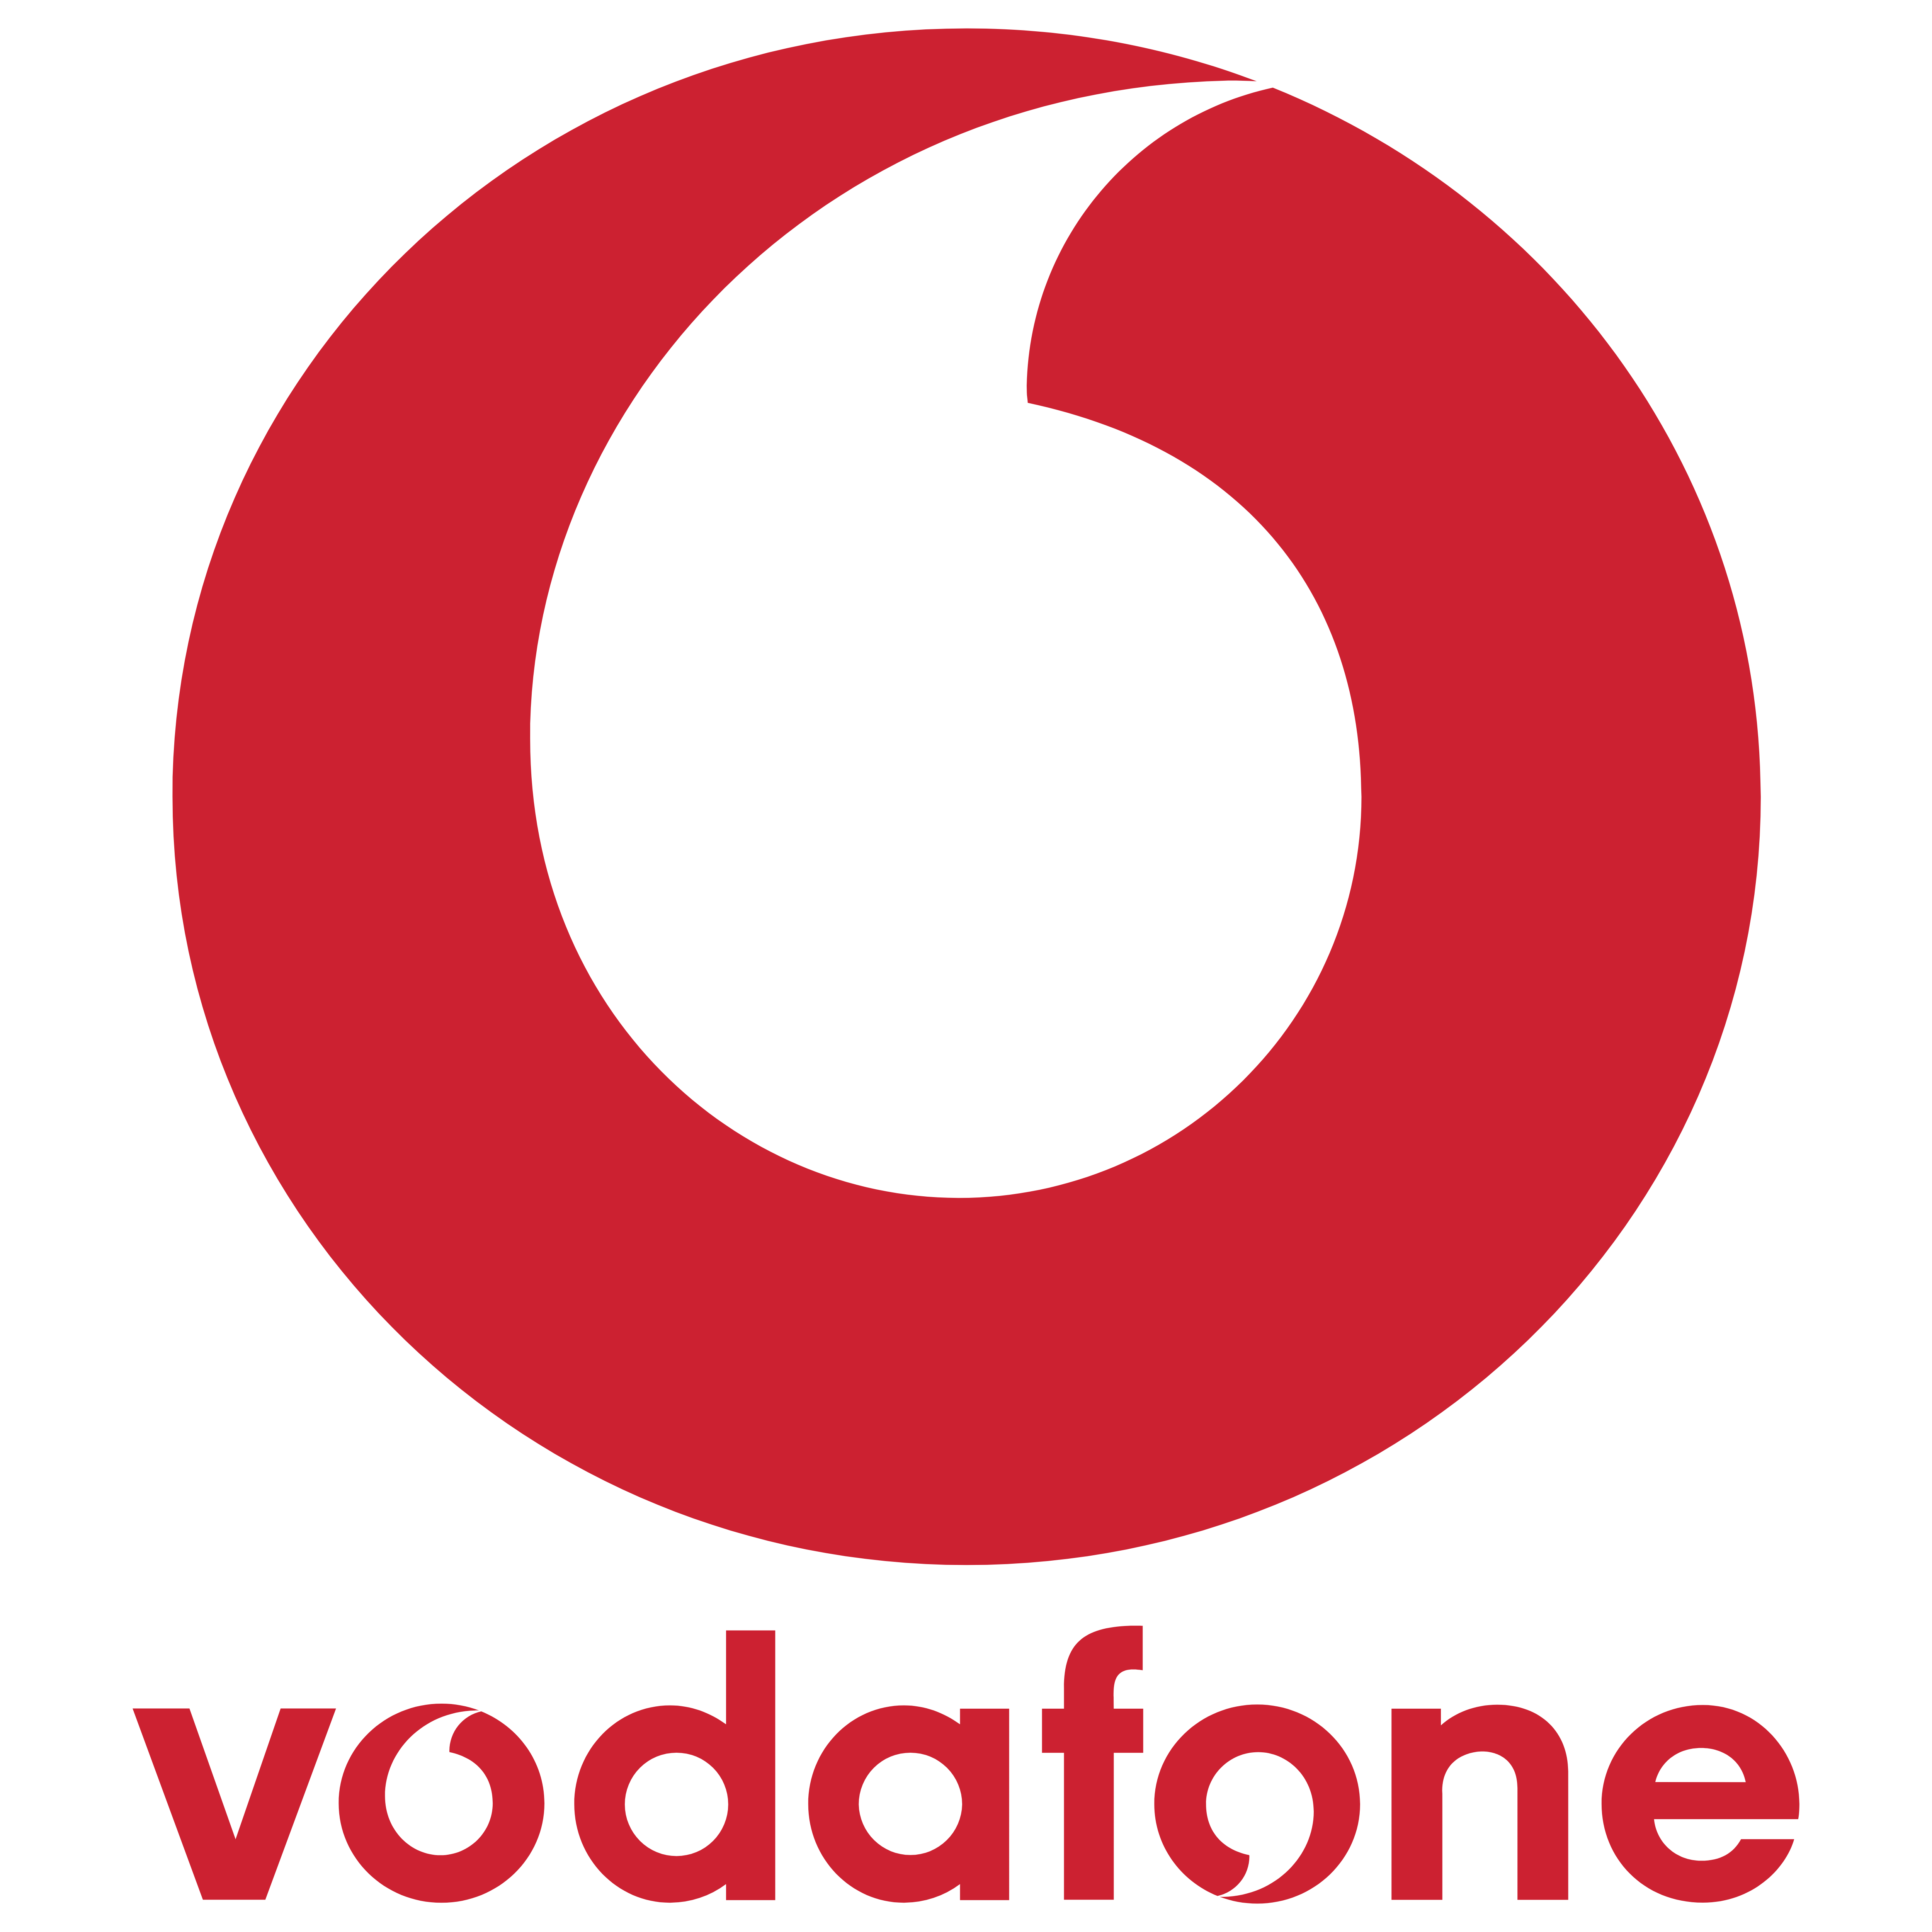 Vodafone Uk Telecommunication